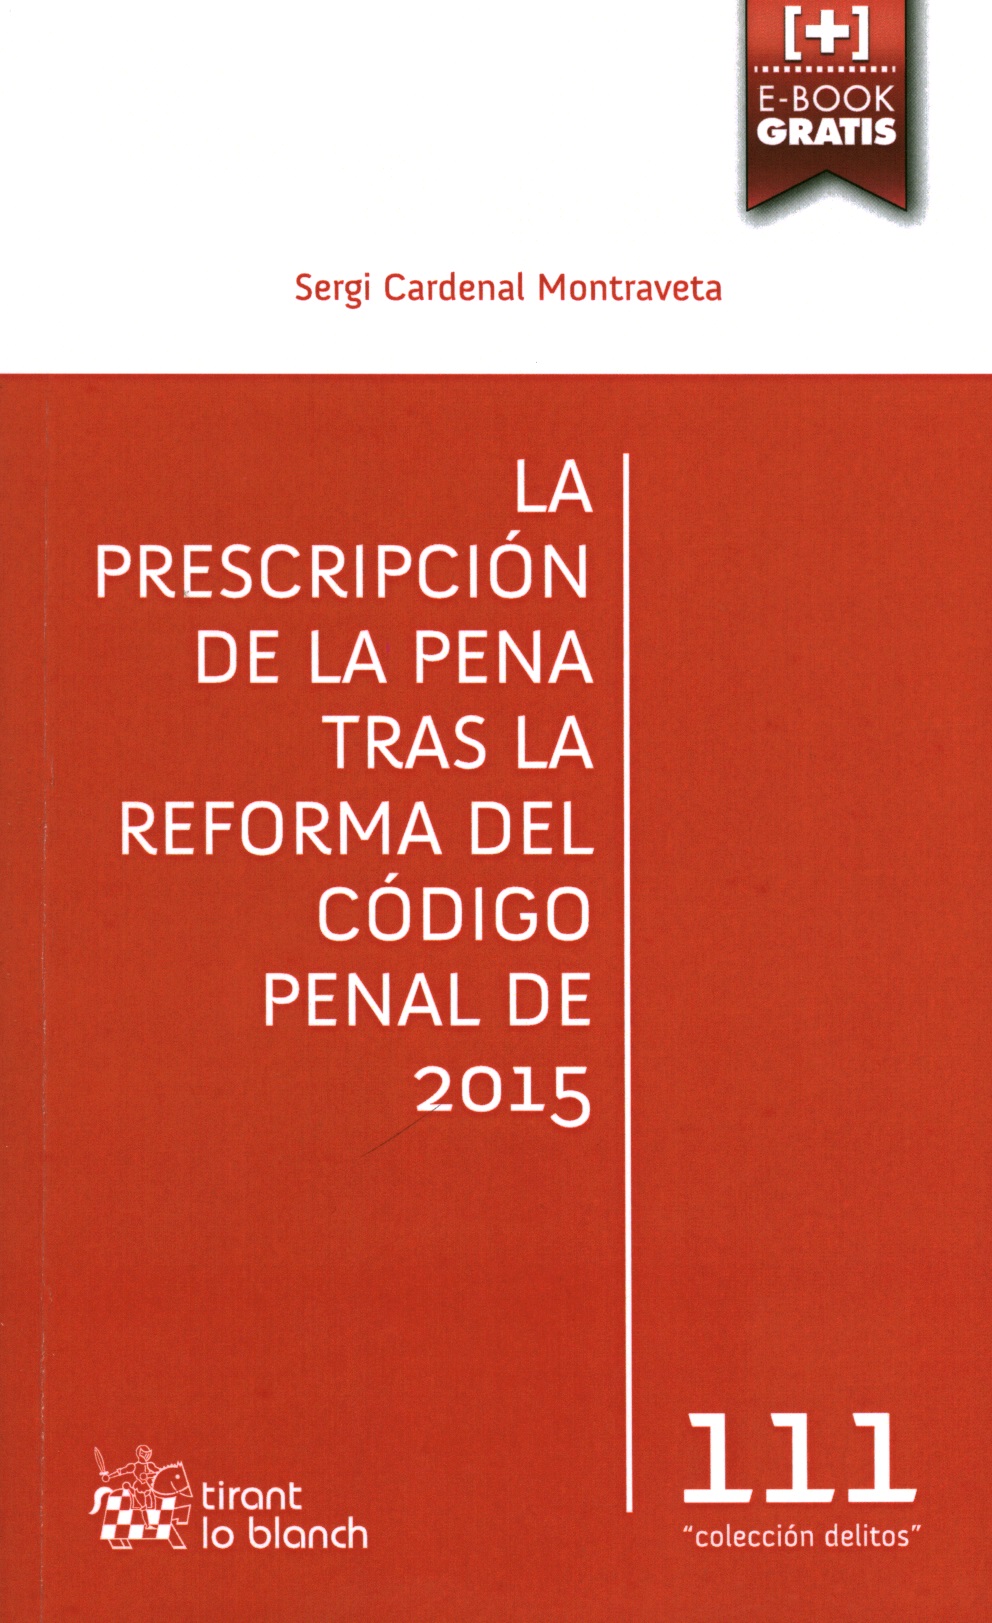 La prescripción de la pena tras la reforma del código penal de 2015